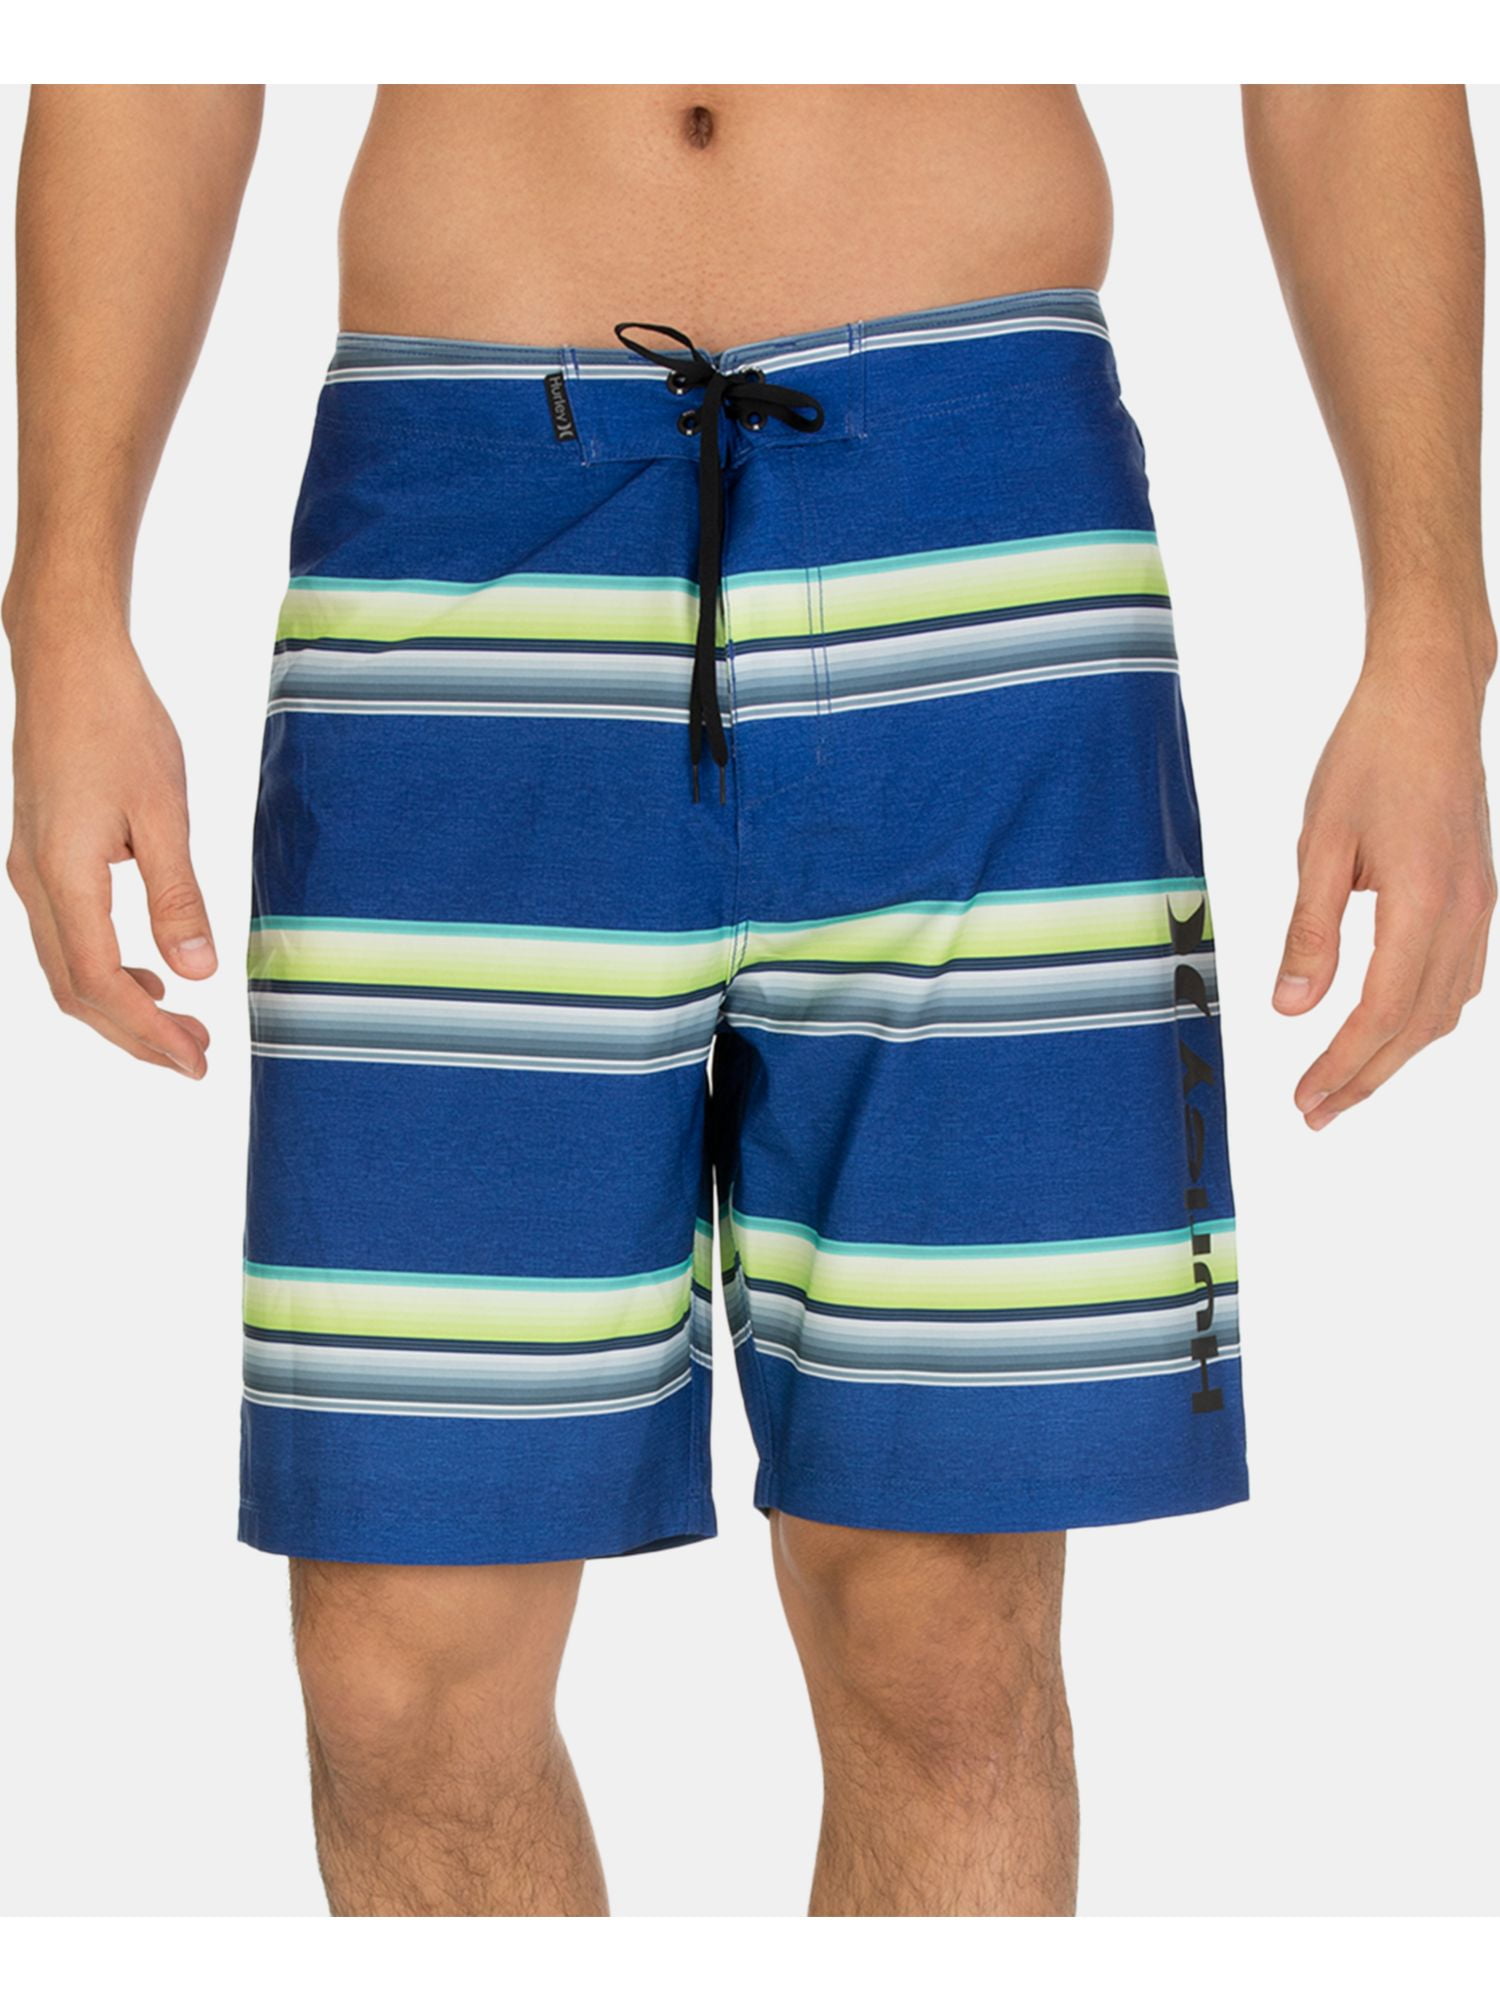 Шорты Hurley 164. Бордшорты мужские для купания Остин. Шорты Funday мужские. Мужские пляжные шорты голубые с зеленым. Shorts 39